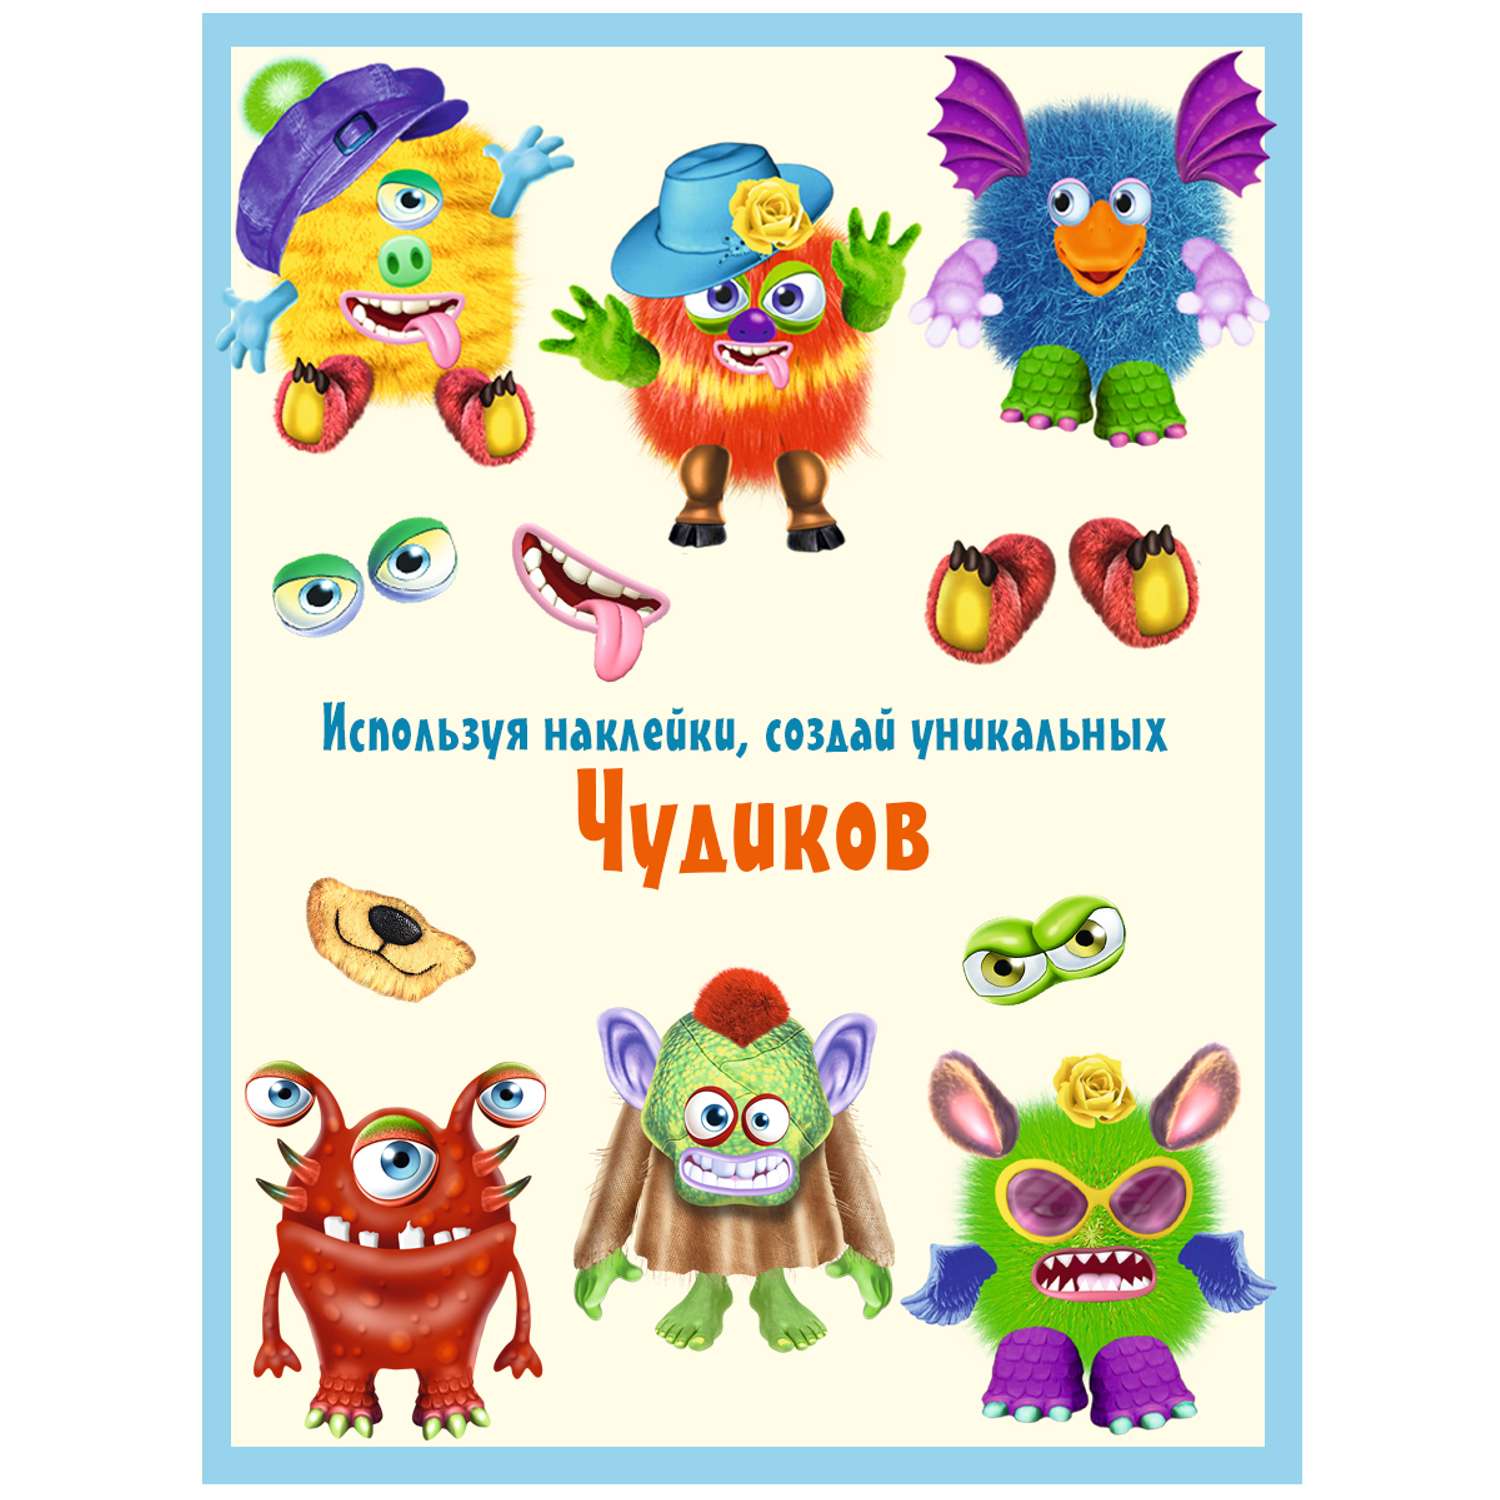 Комплект книг с наклейками Фламинго Книги для детей развивающие Сделай своего чудика из наклеек Набор для творчества - фото 2